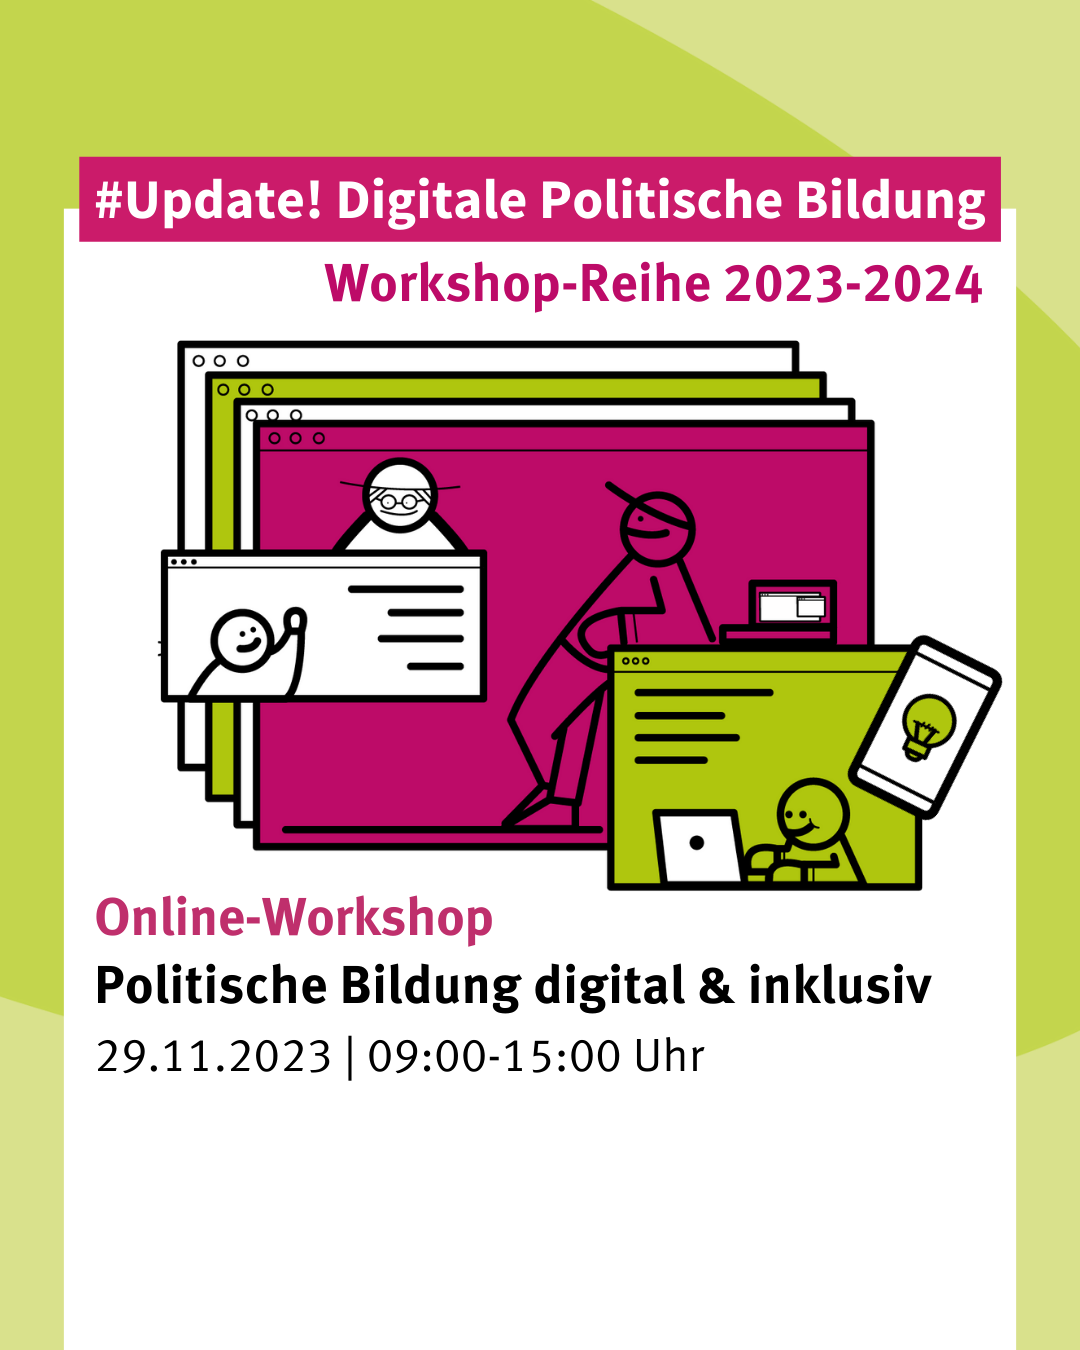 Online-Workshop: Politische Bildung digital & inklusiv?